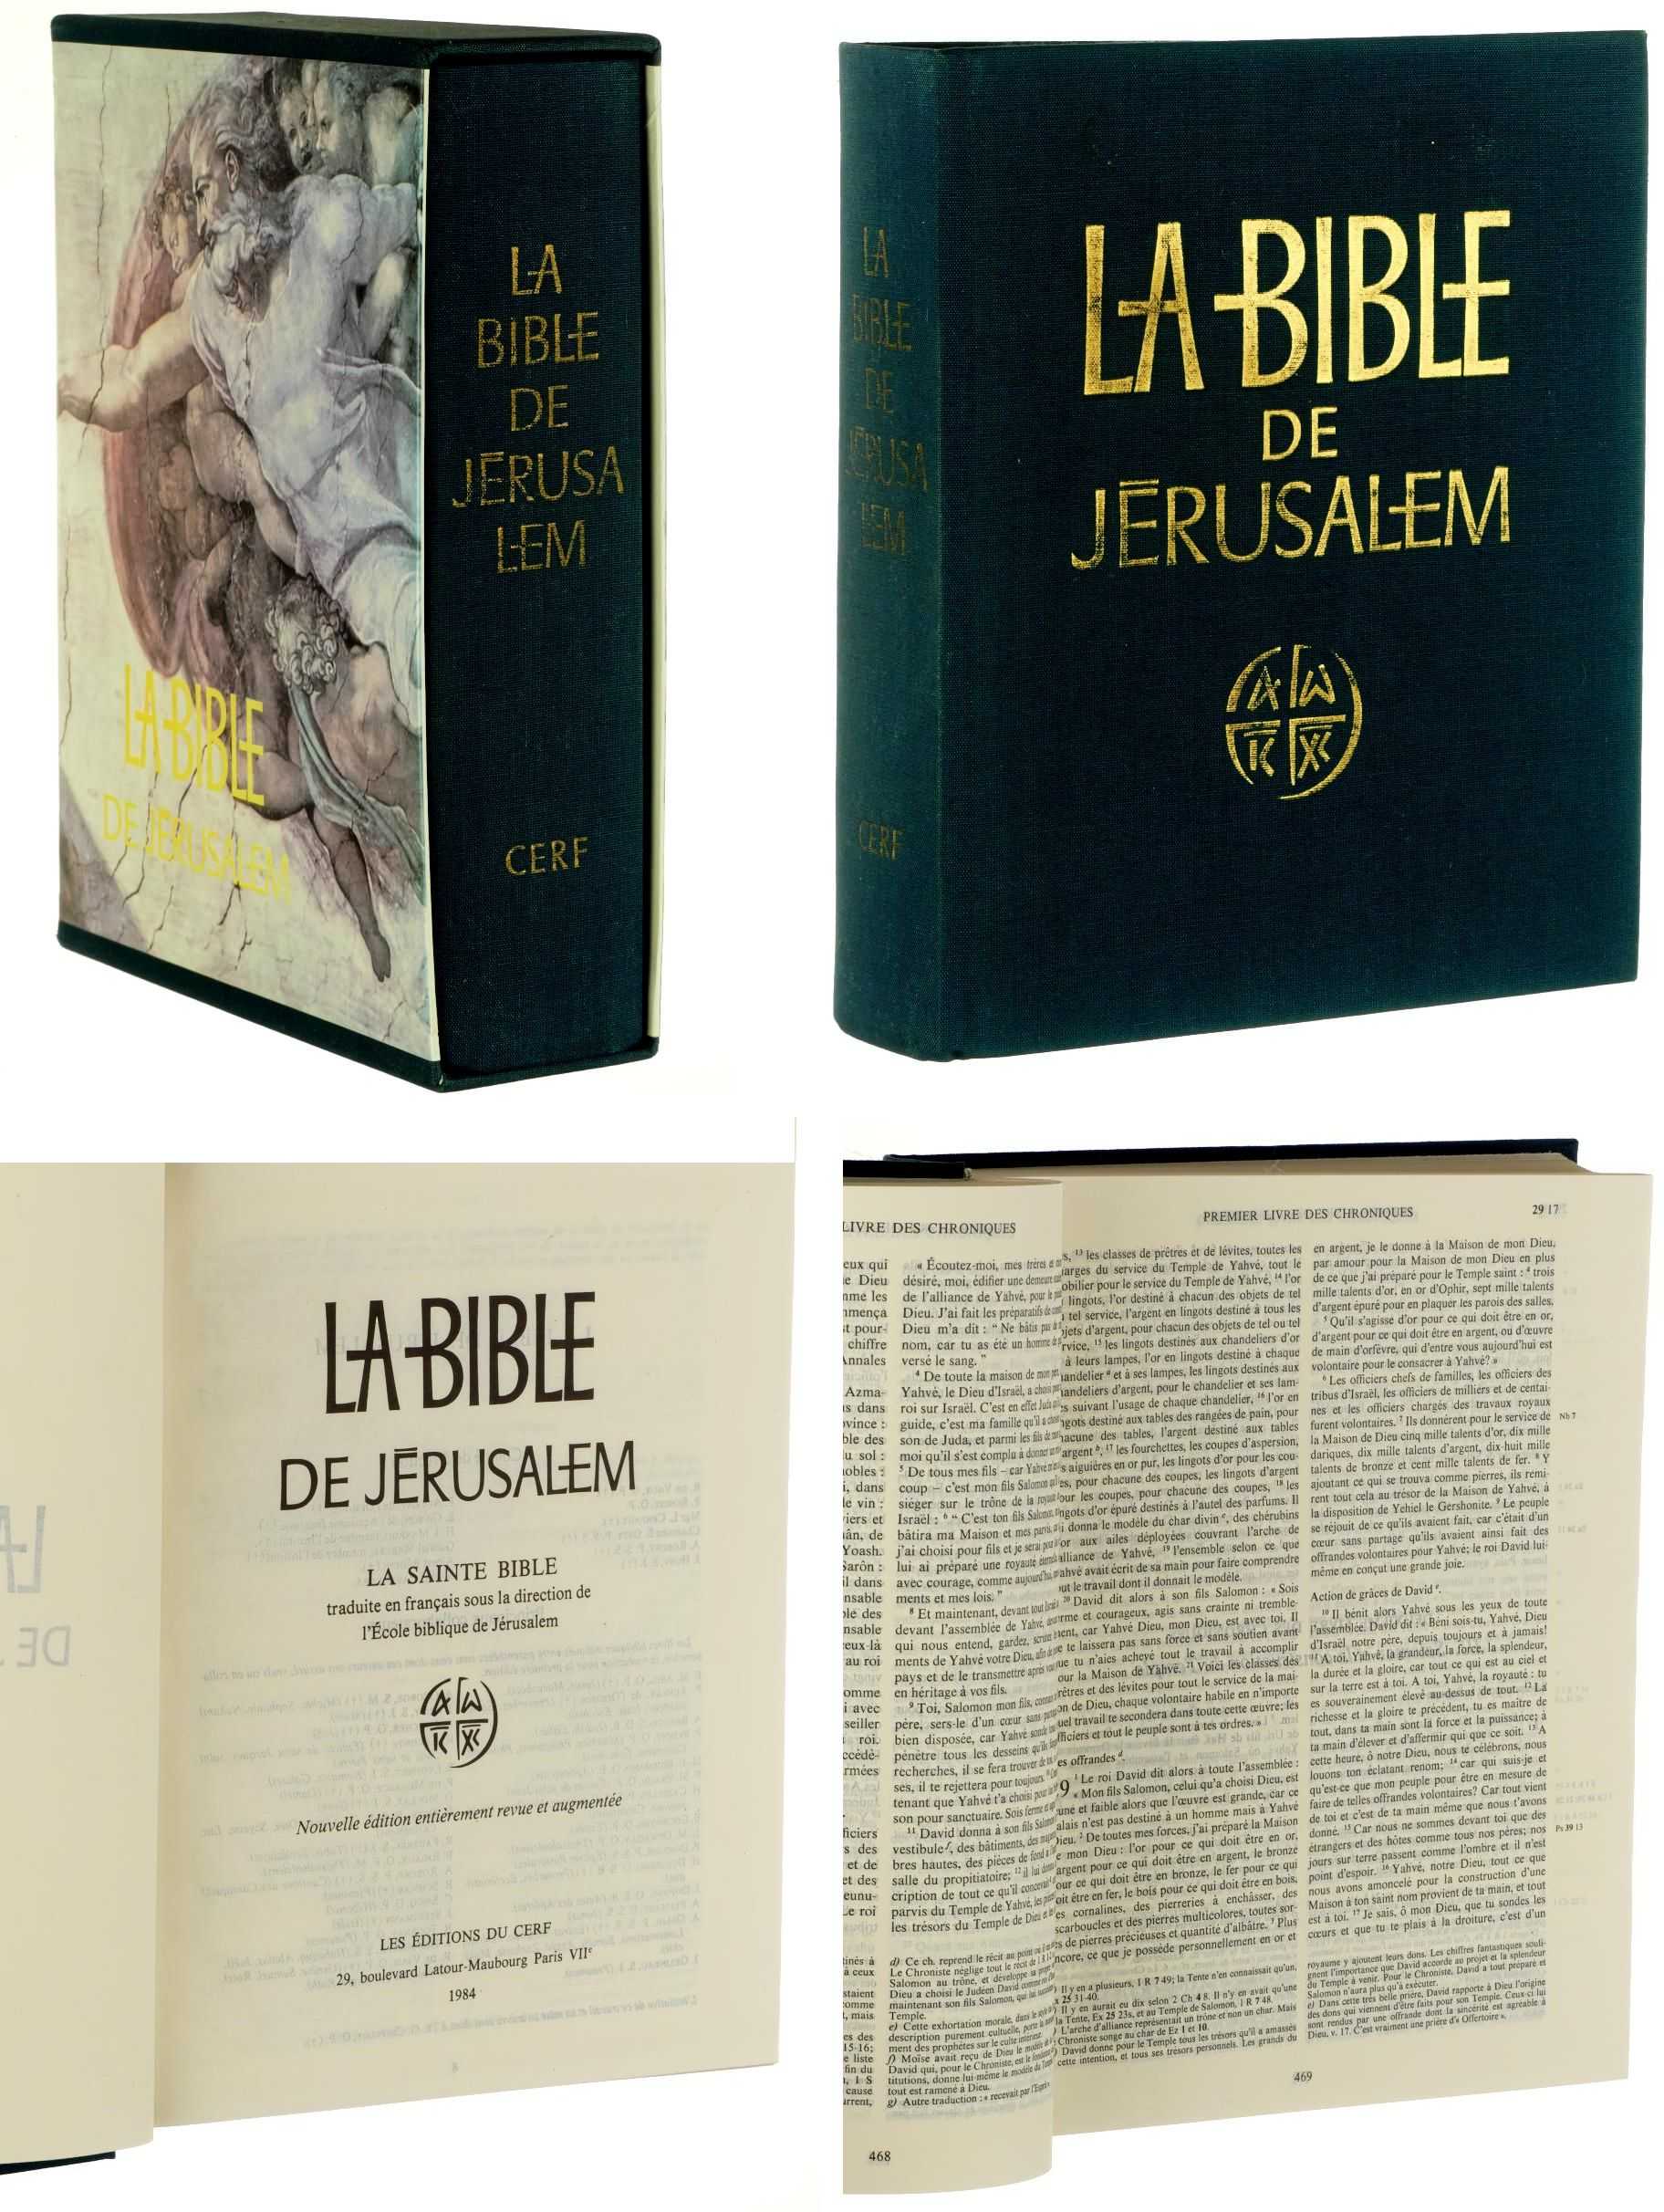 La Bible de Jérusalem.  La Sainte Bible traduite en français sous la direction de l'École biblique de Jérusalem. Nouvelle édition entièrement revue et augmentée. 